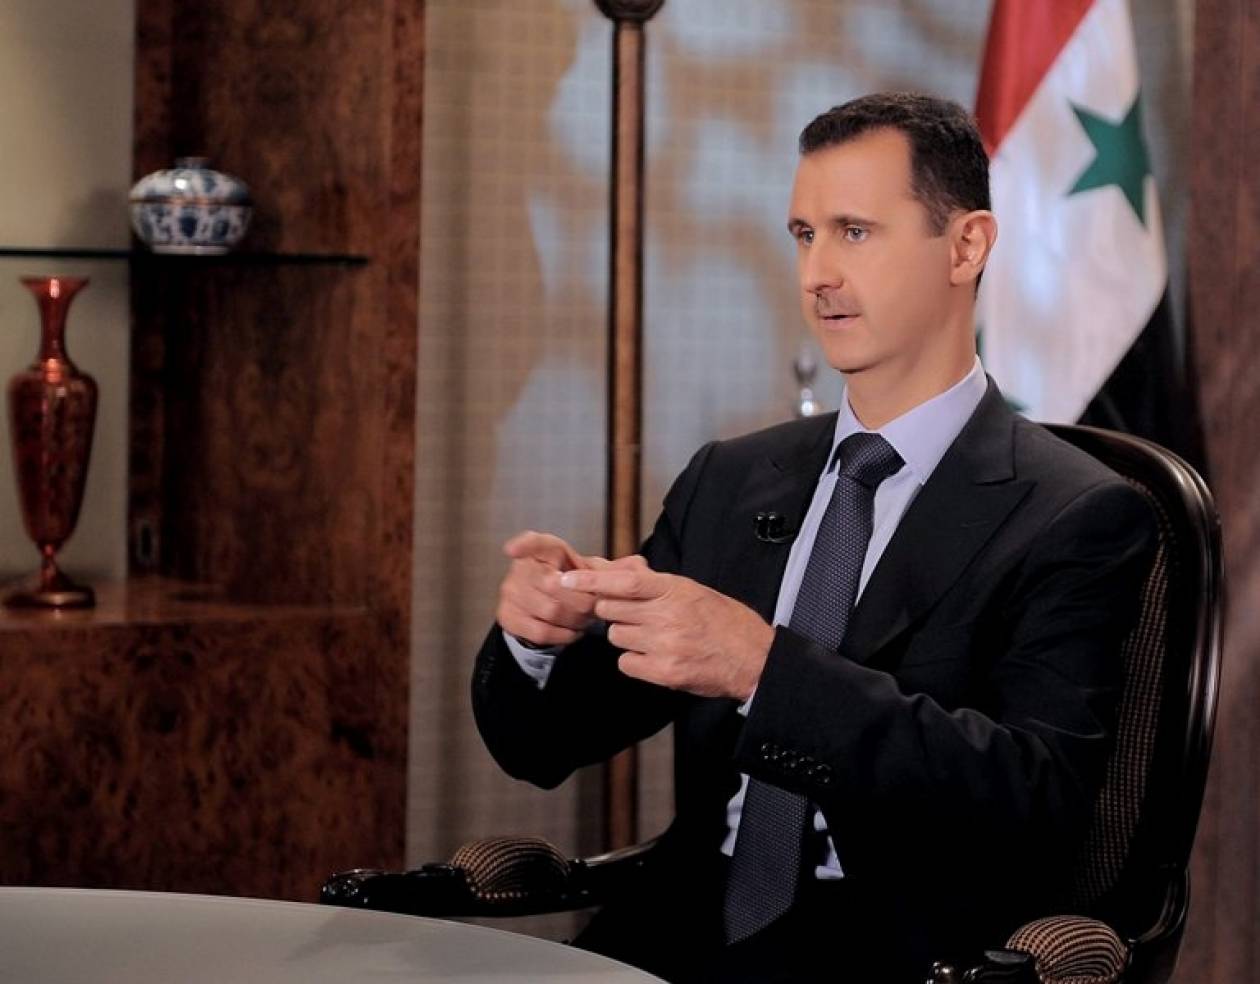 Άσαντ: Η αντιπολίτευση παίζει τα τελευταία της χαρτιά